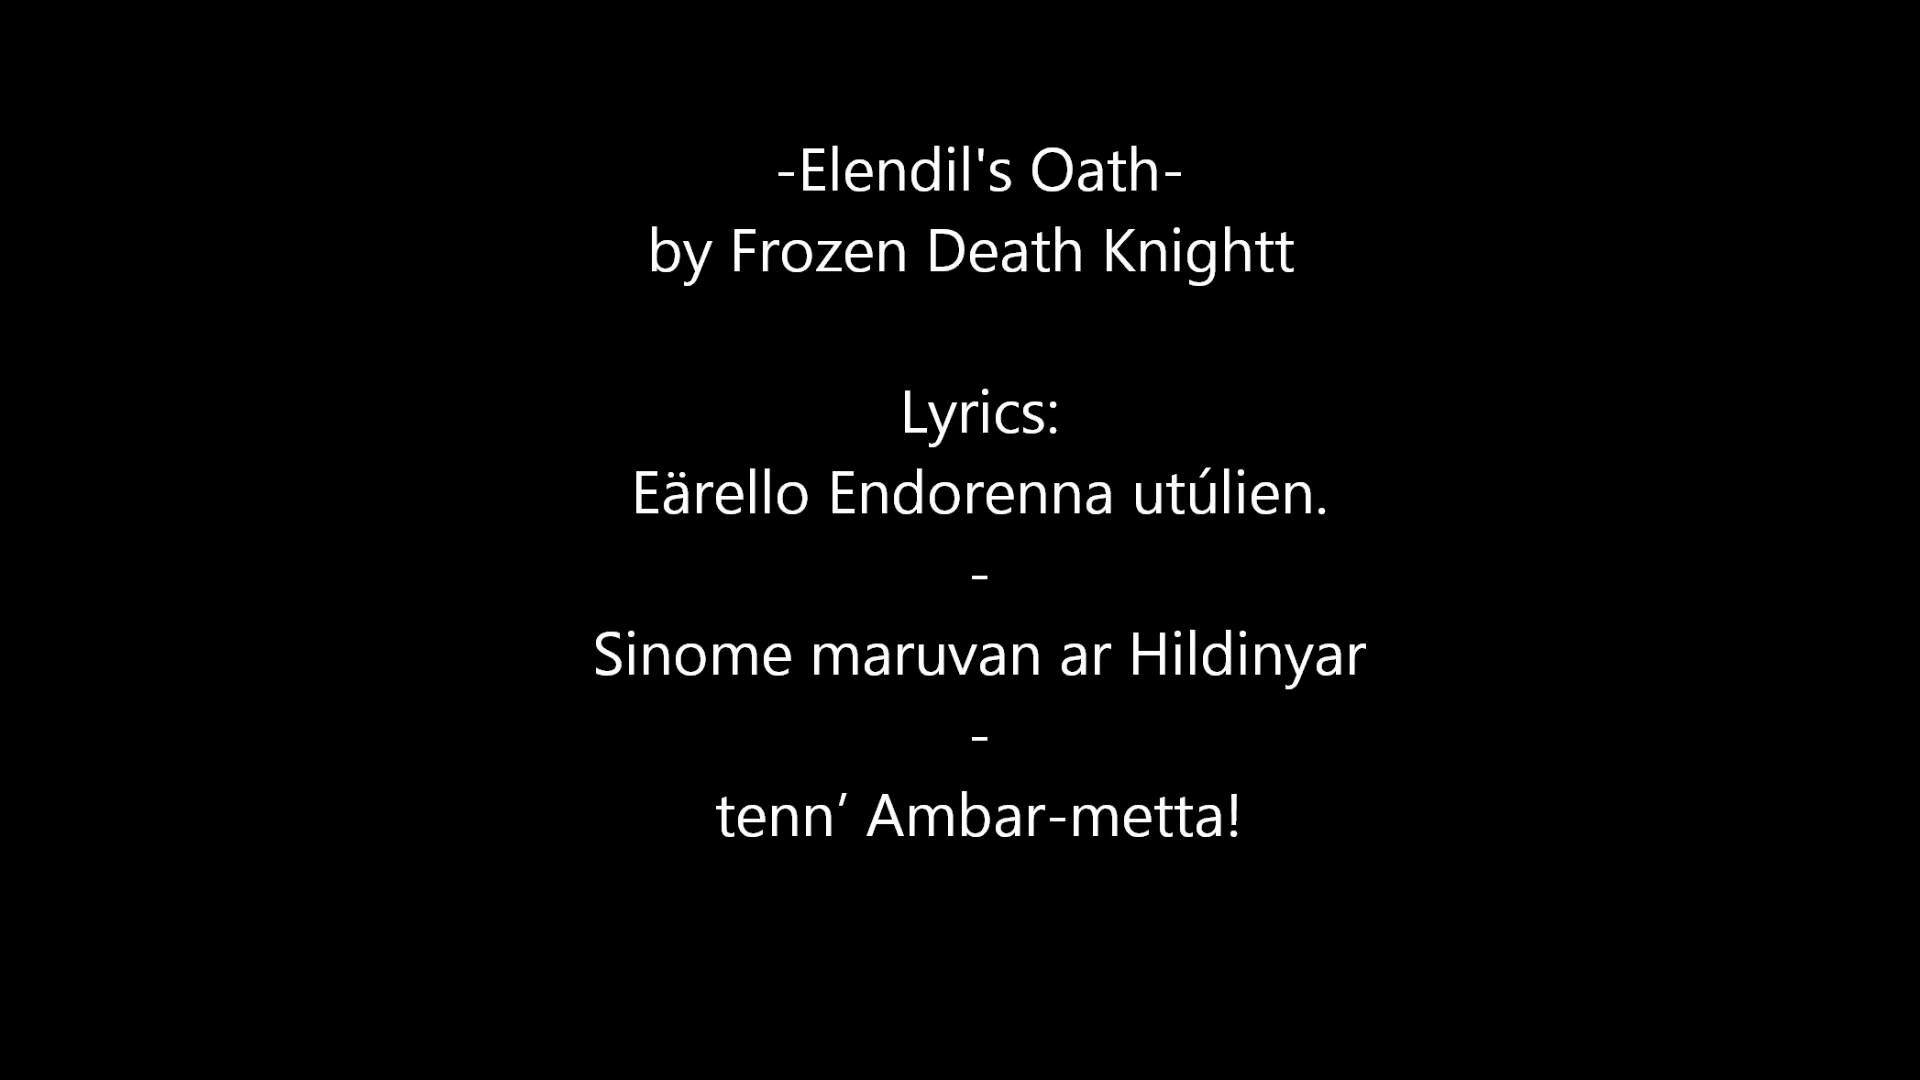 1920x1080 Elendil's Oath by Frozen Death Knight